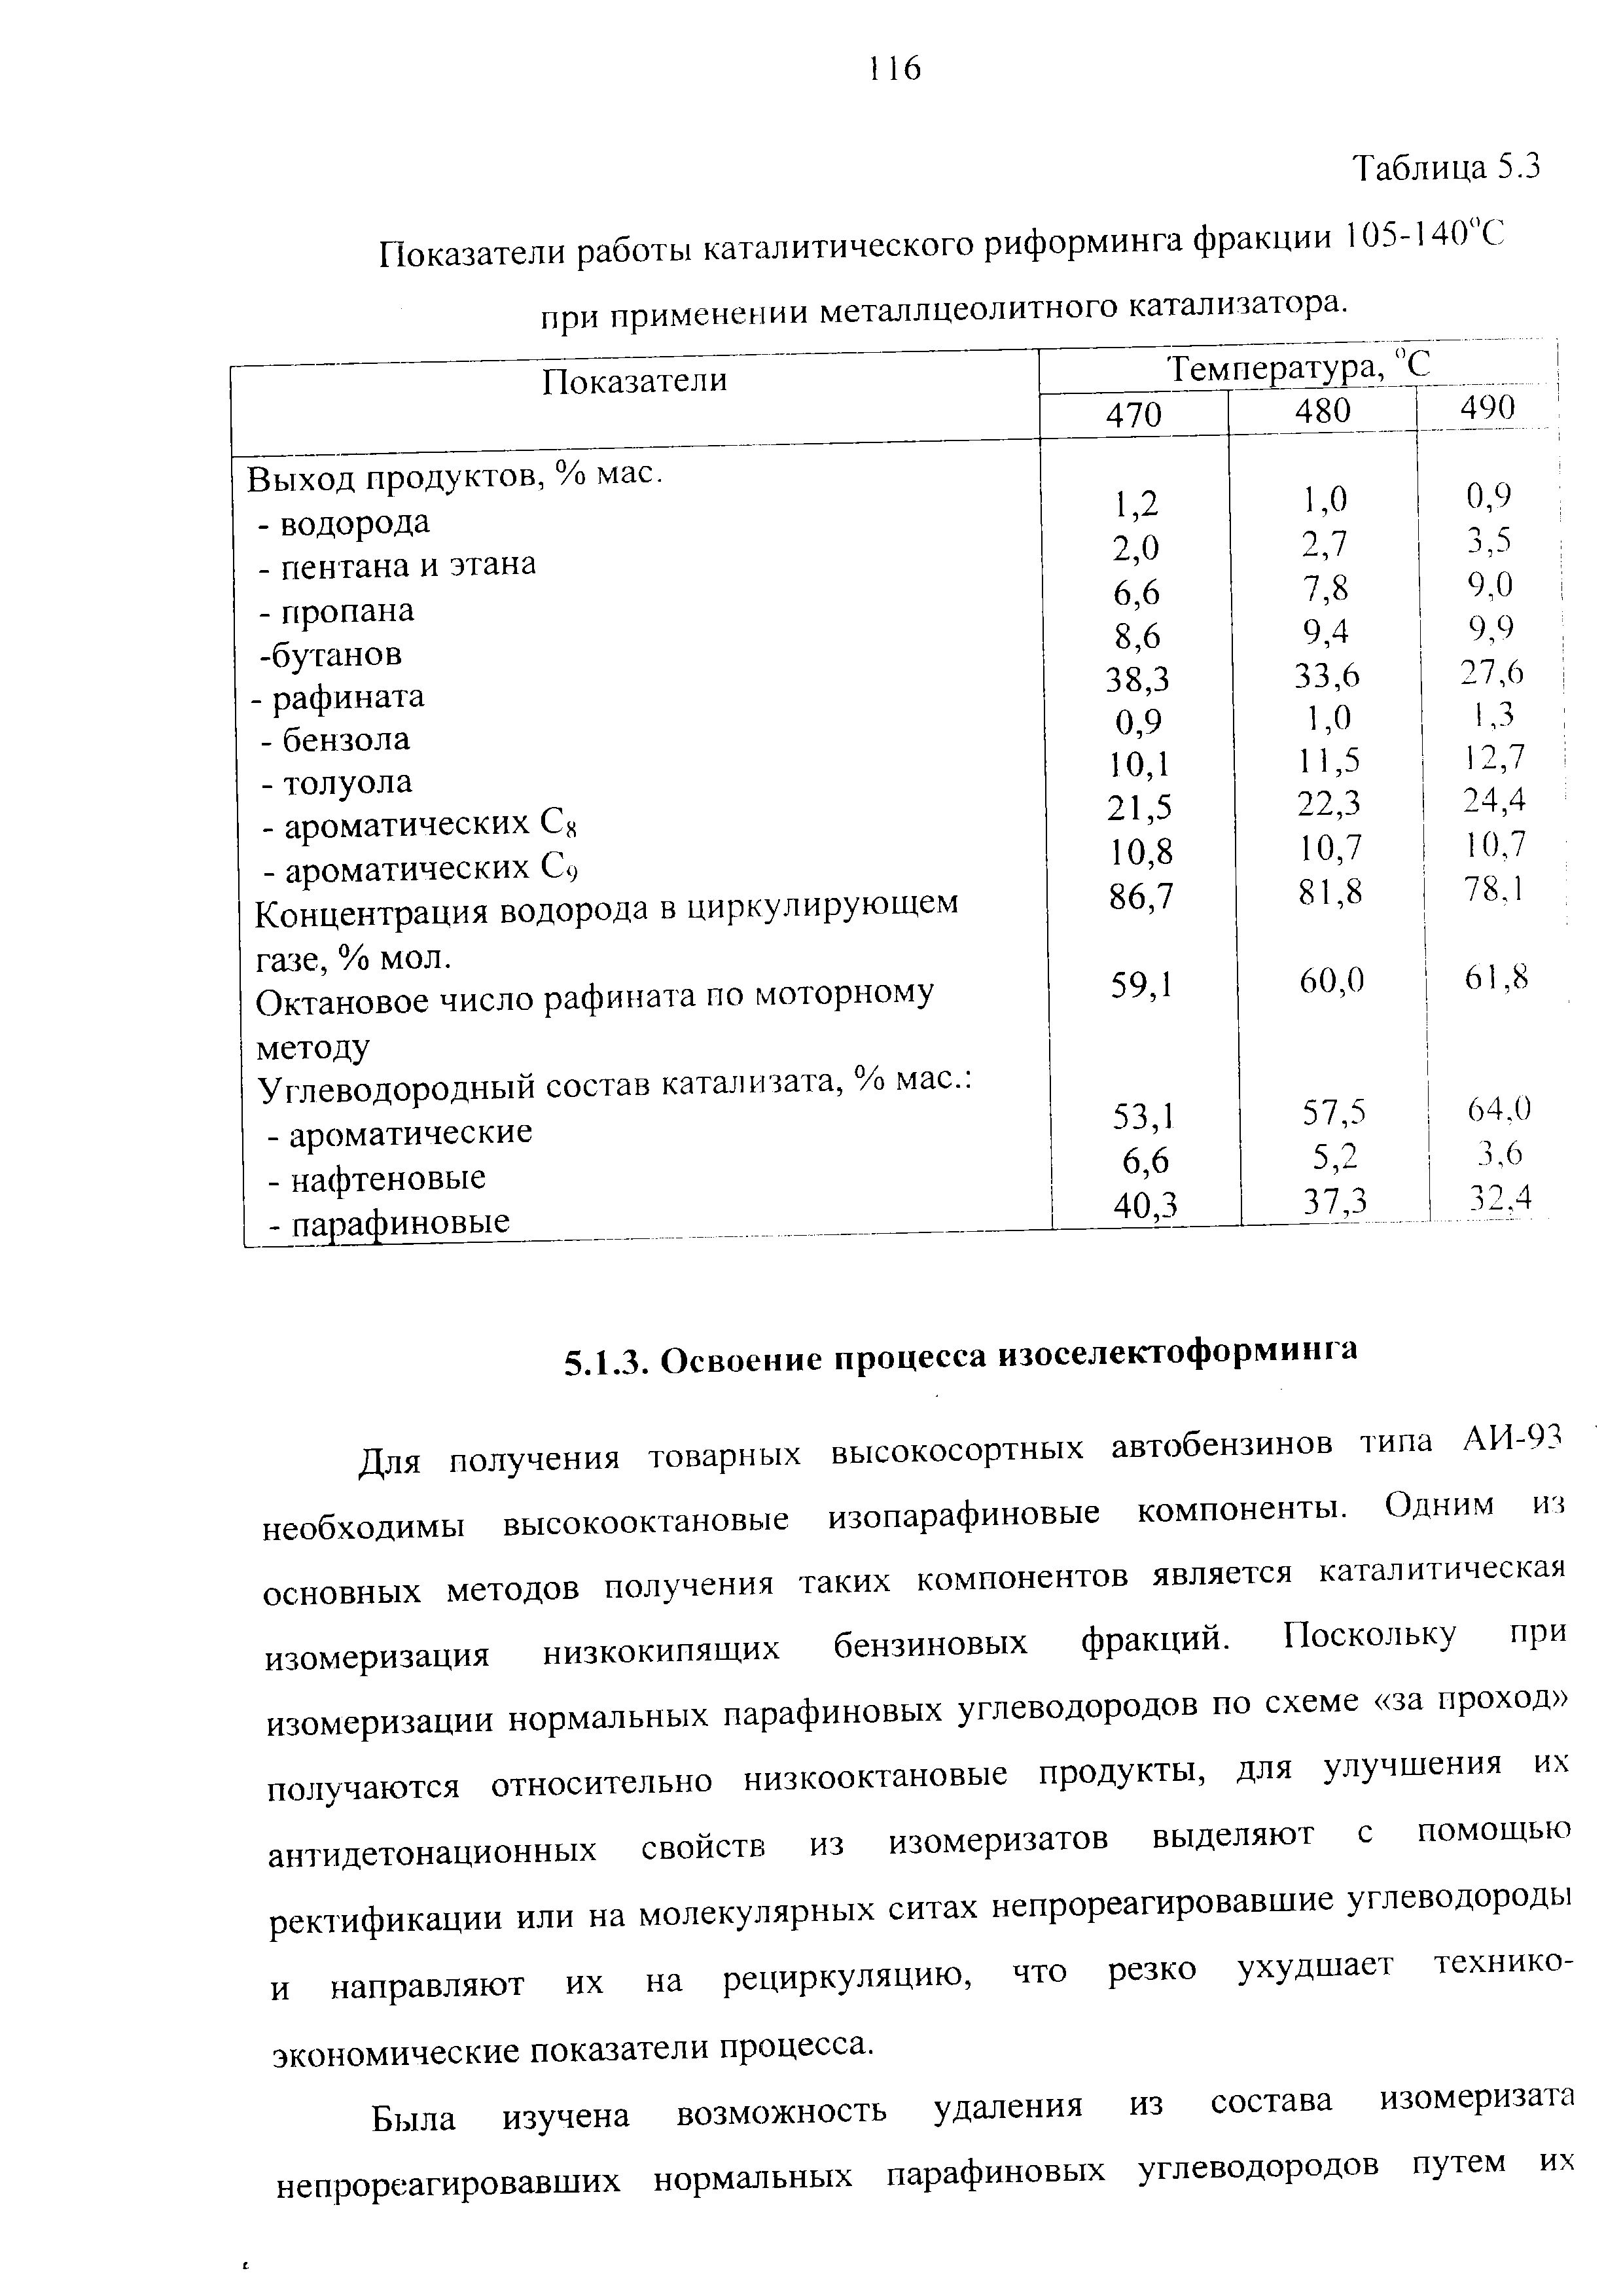 Показатели работы каталитического риформинга фракции 105-140 С при применении металлцеолитного катализатора.